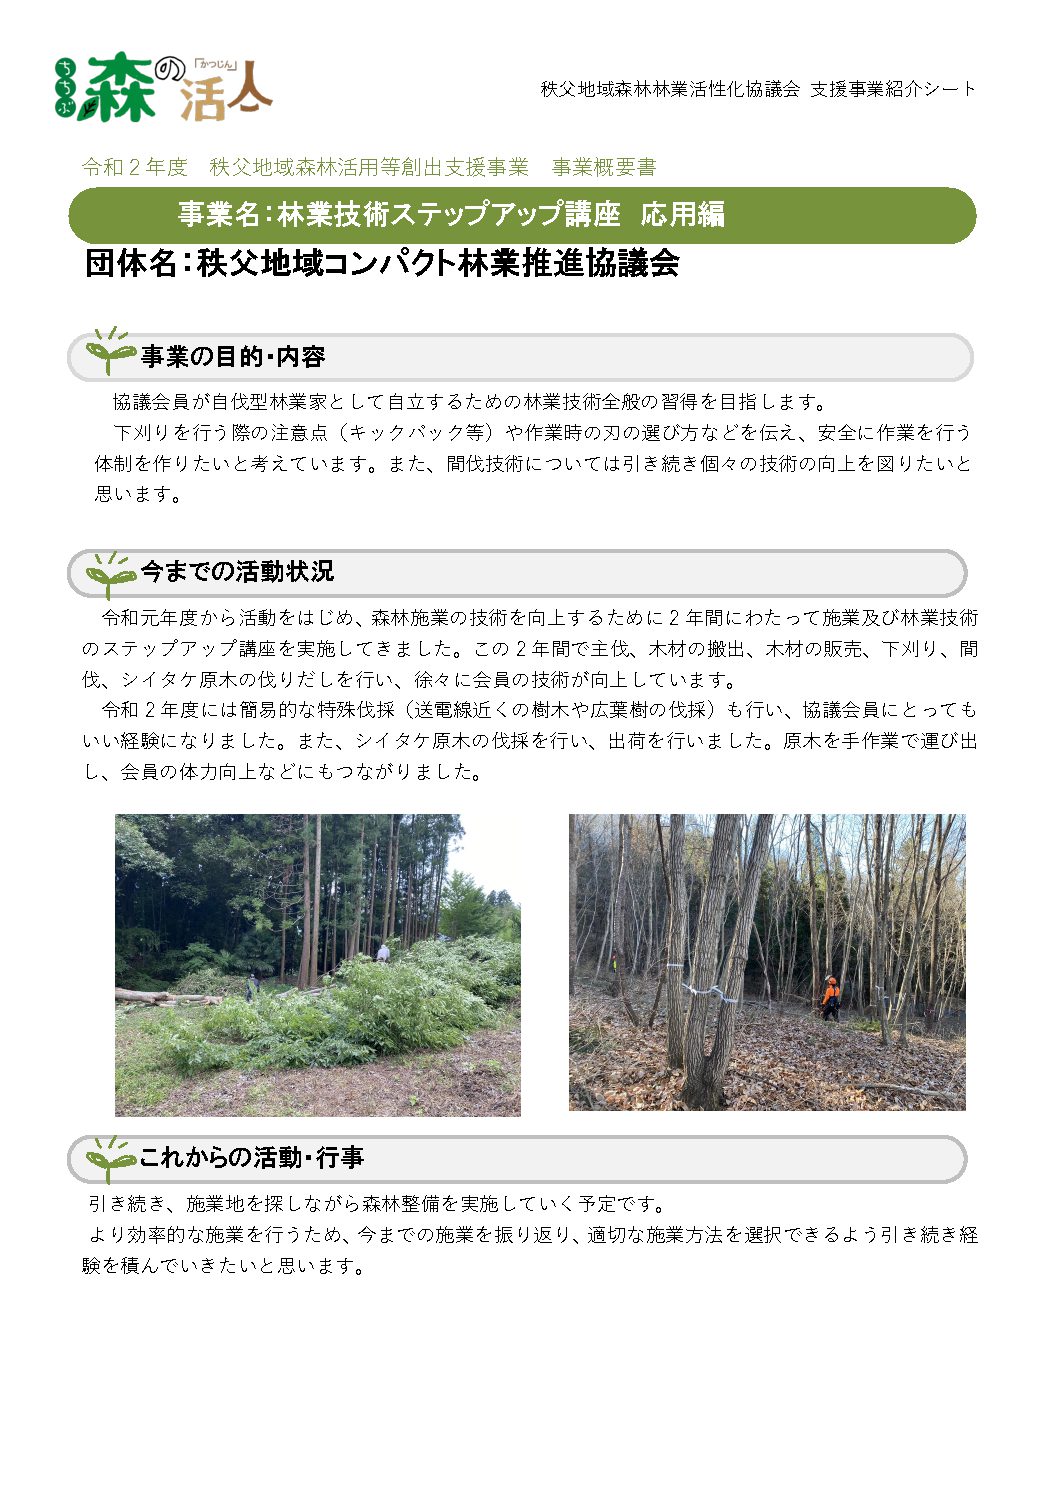 3-3 コンパクト林業推進協議会事業概要書